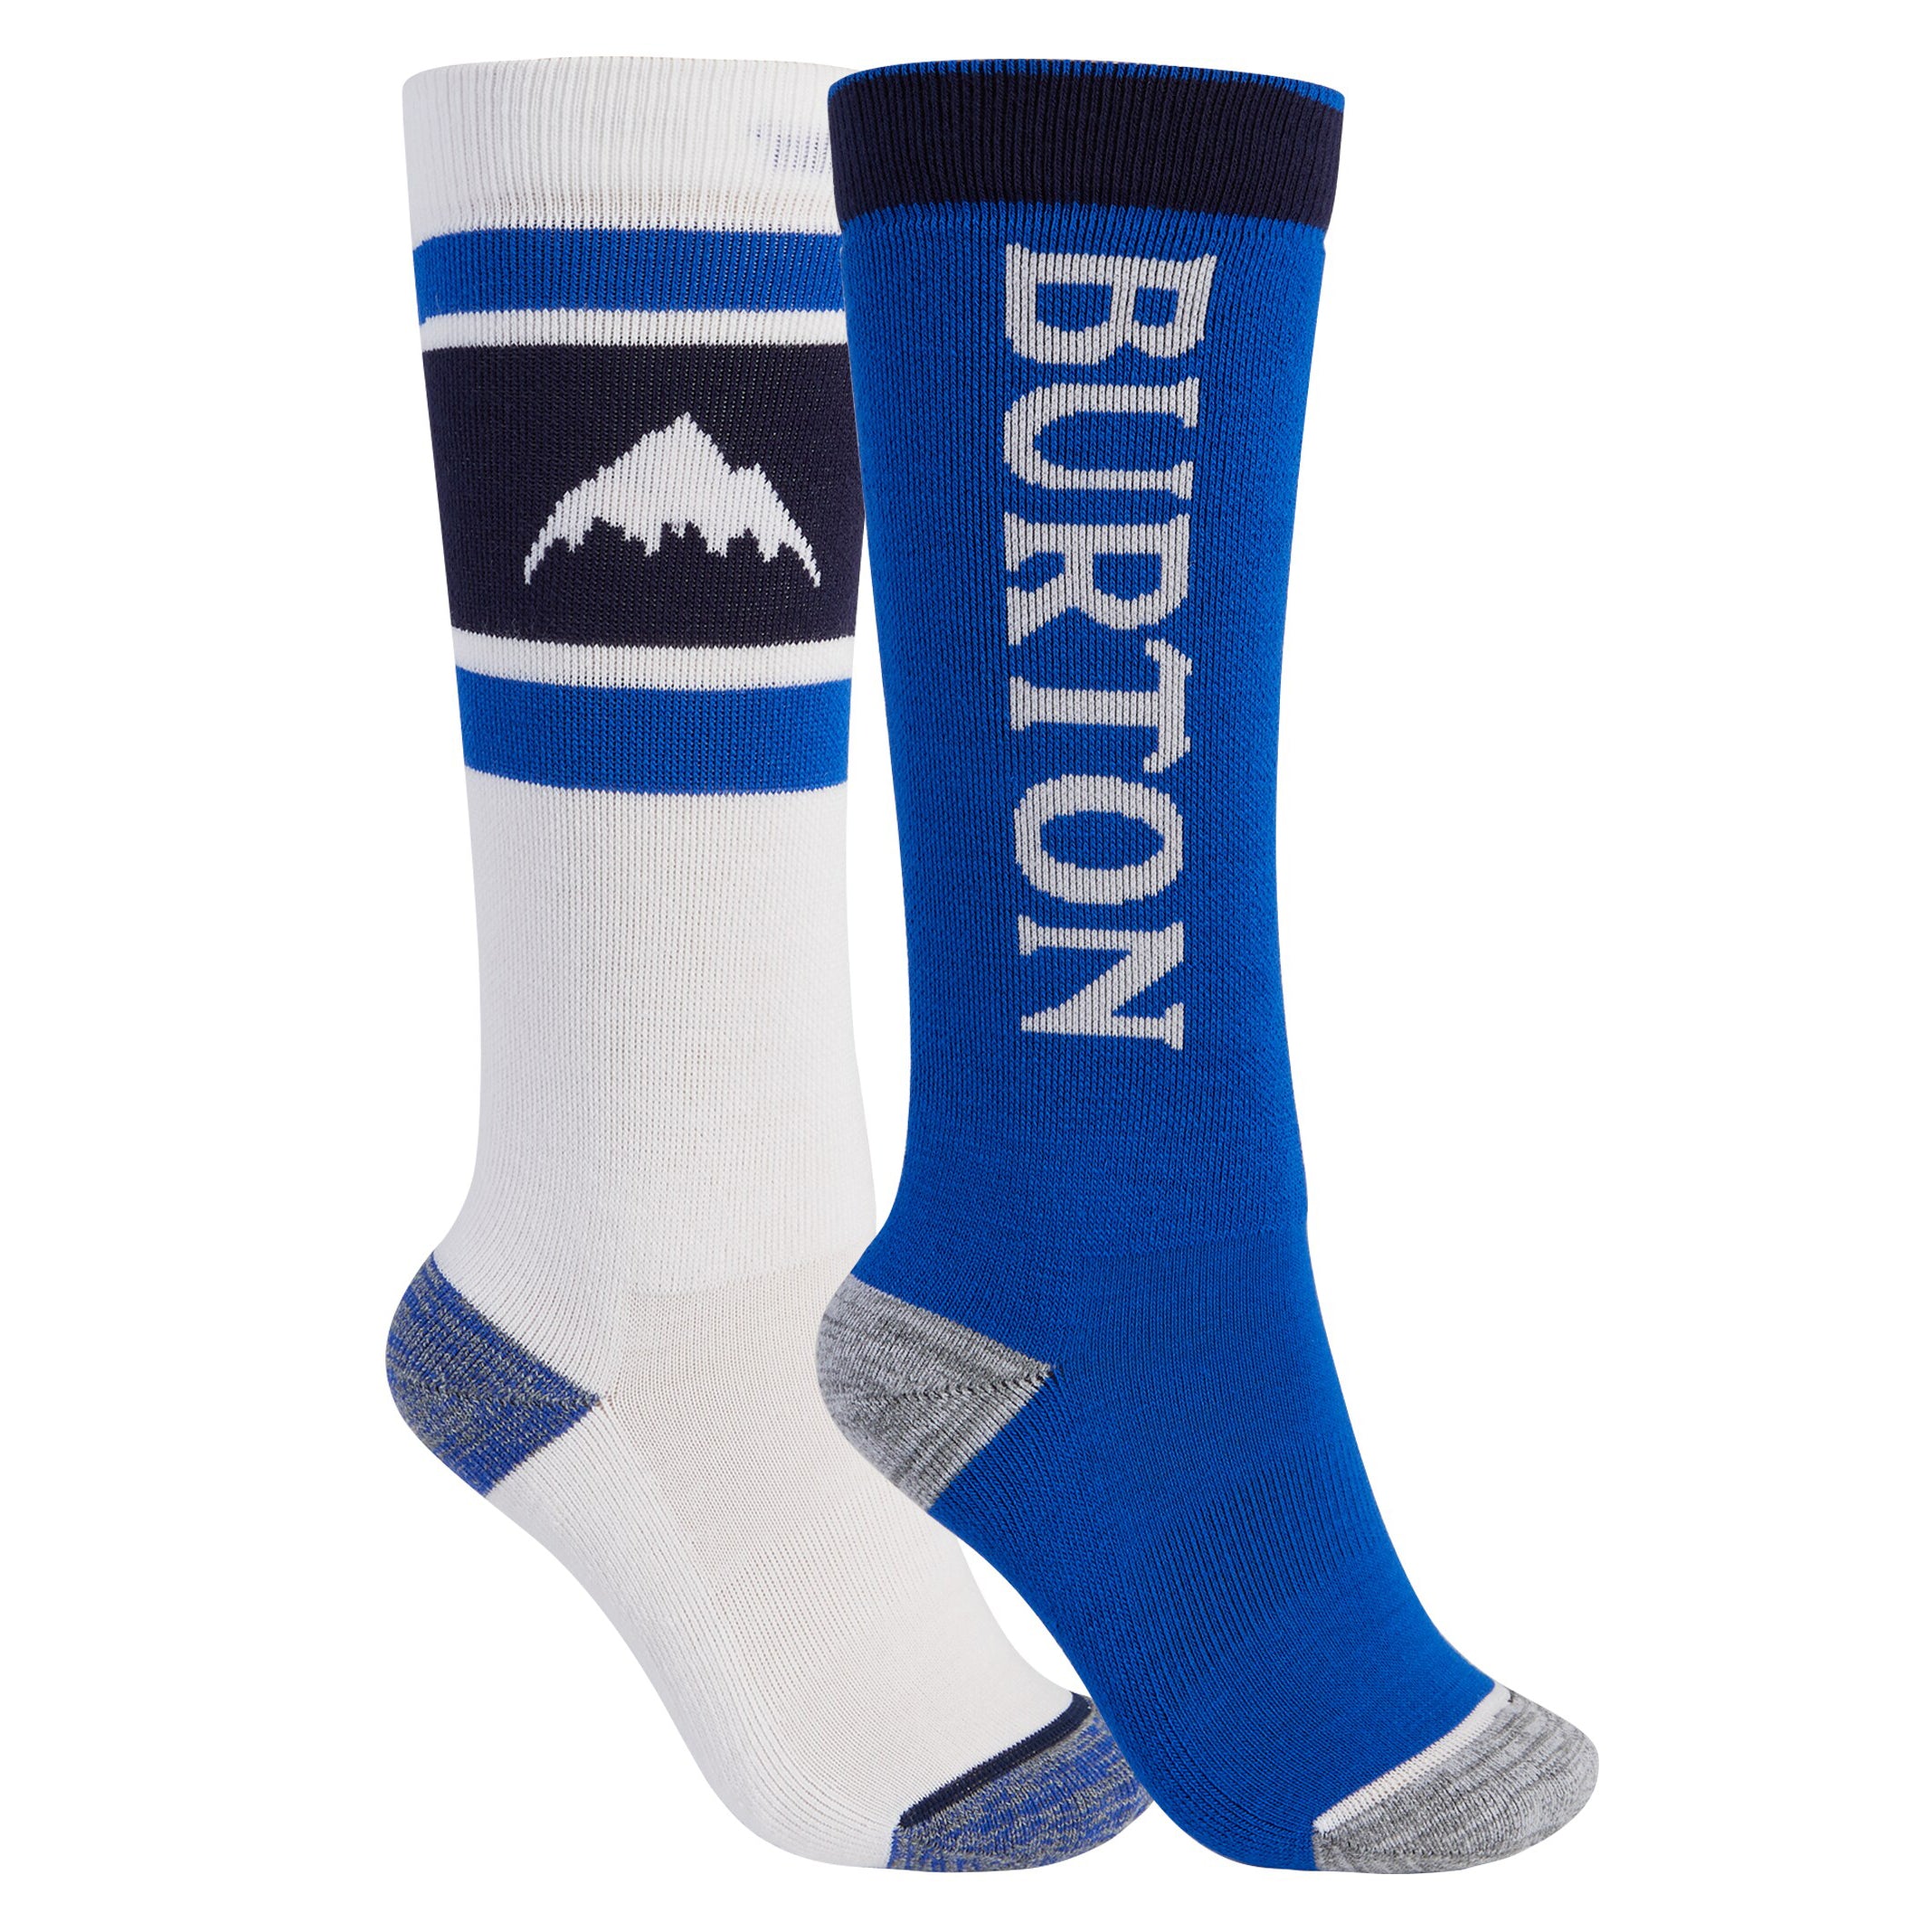 Boys & Girls Blue Snow Socks(2 Pack)